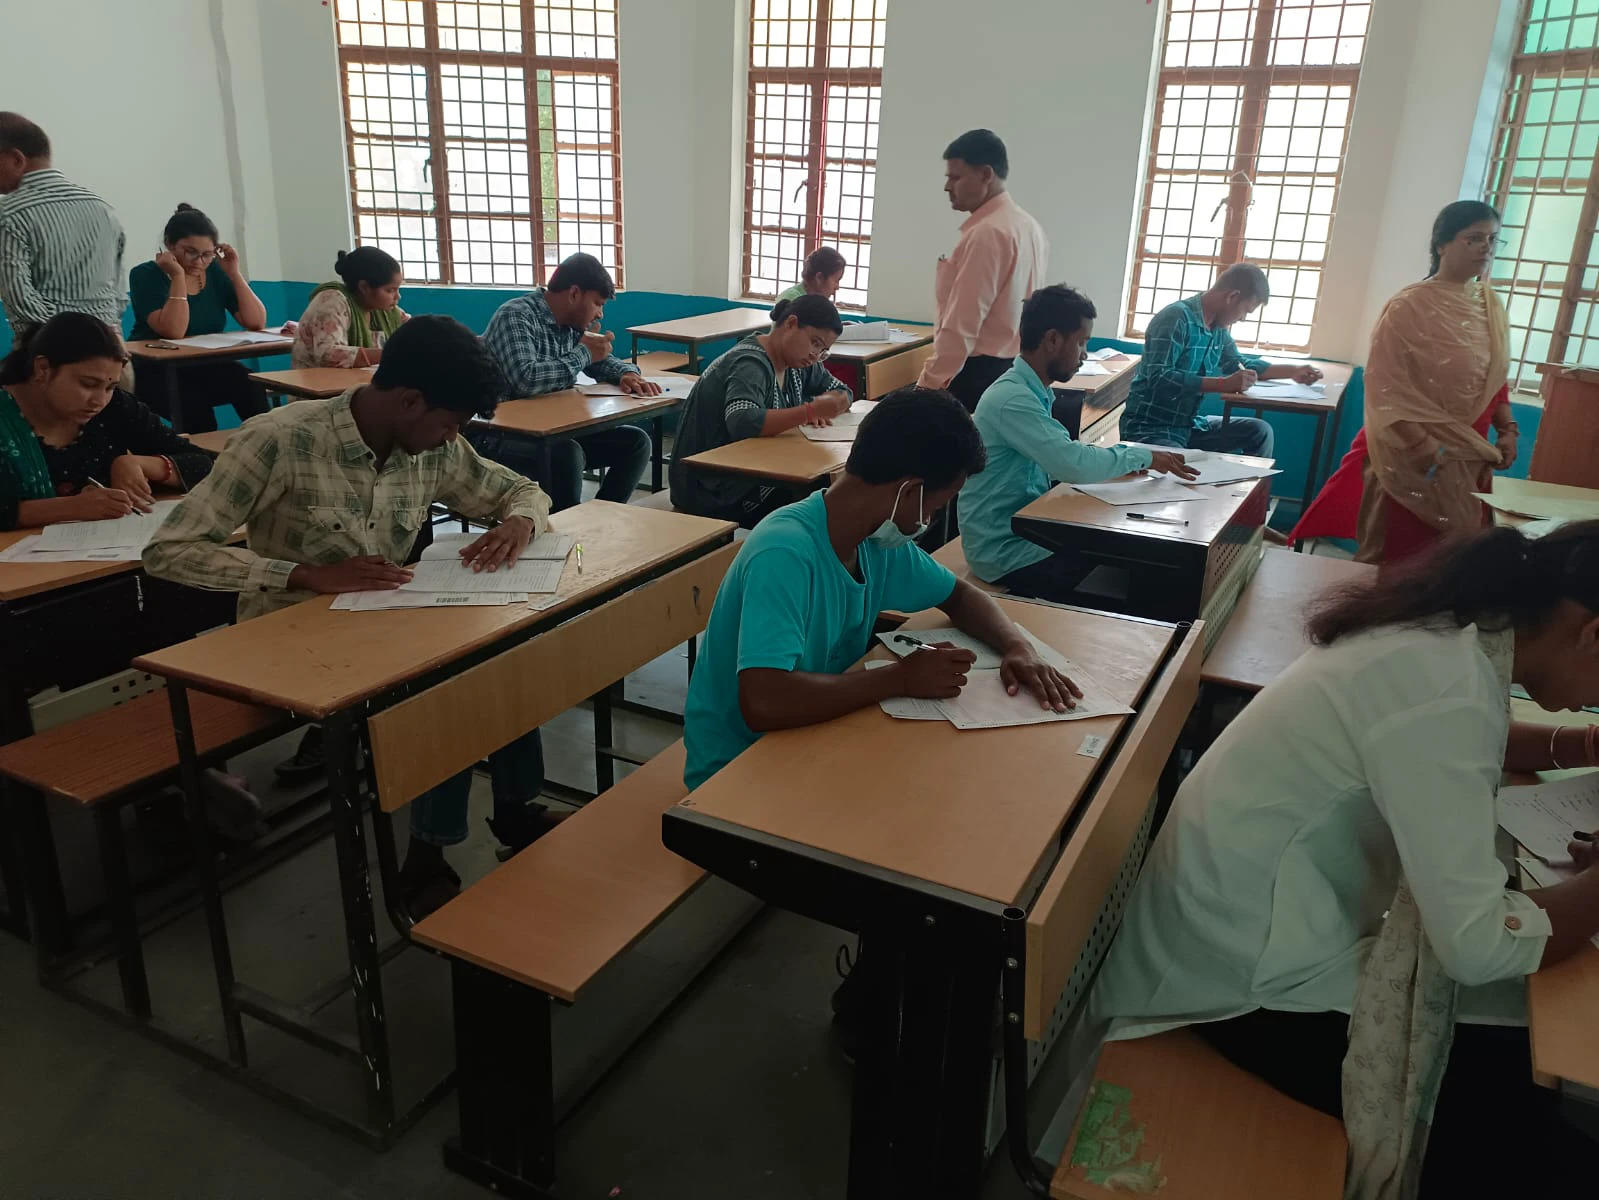 मध्यप्रदेश लोक सेवा आयोग प्रारंभिक परीक्षा में 7 निर्धारित केन्द्रों में 1524 परीक्षार्थियों ने दी परीक्षा